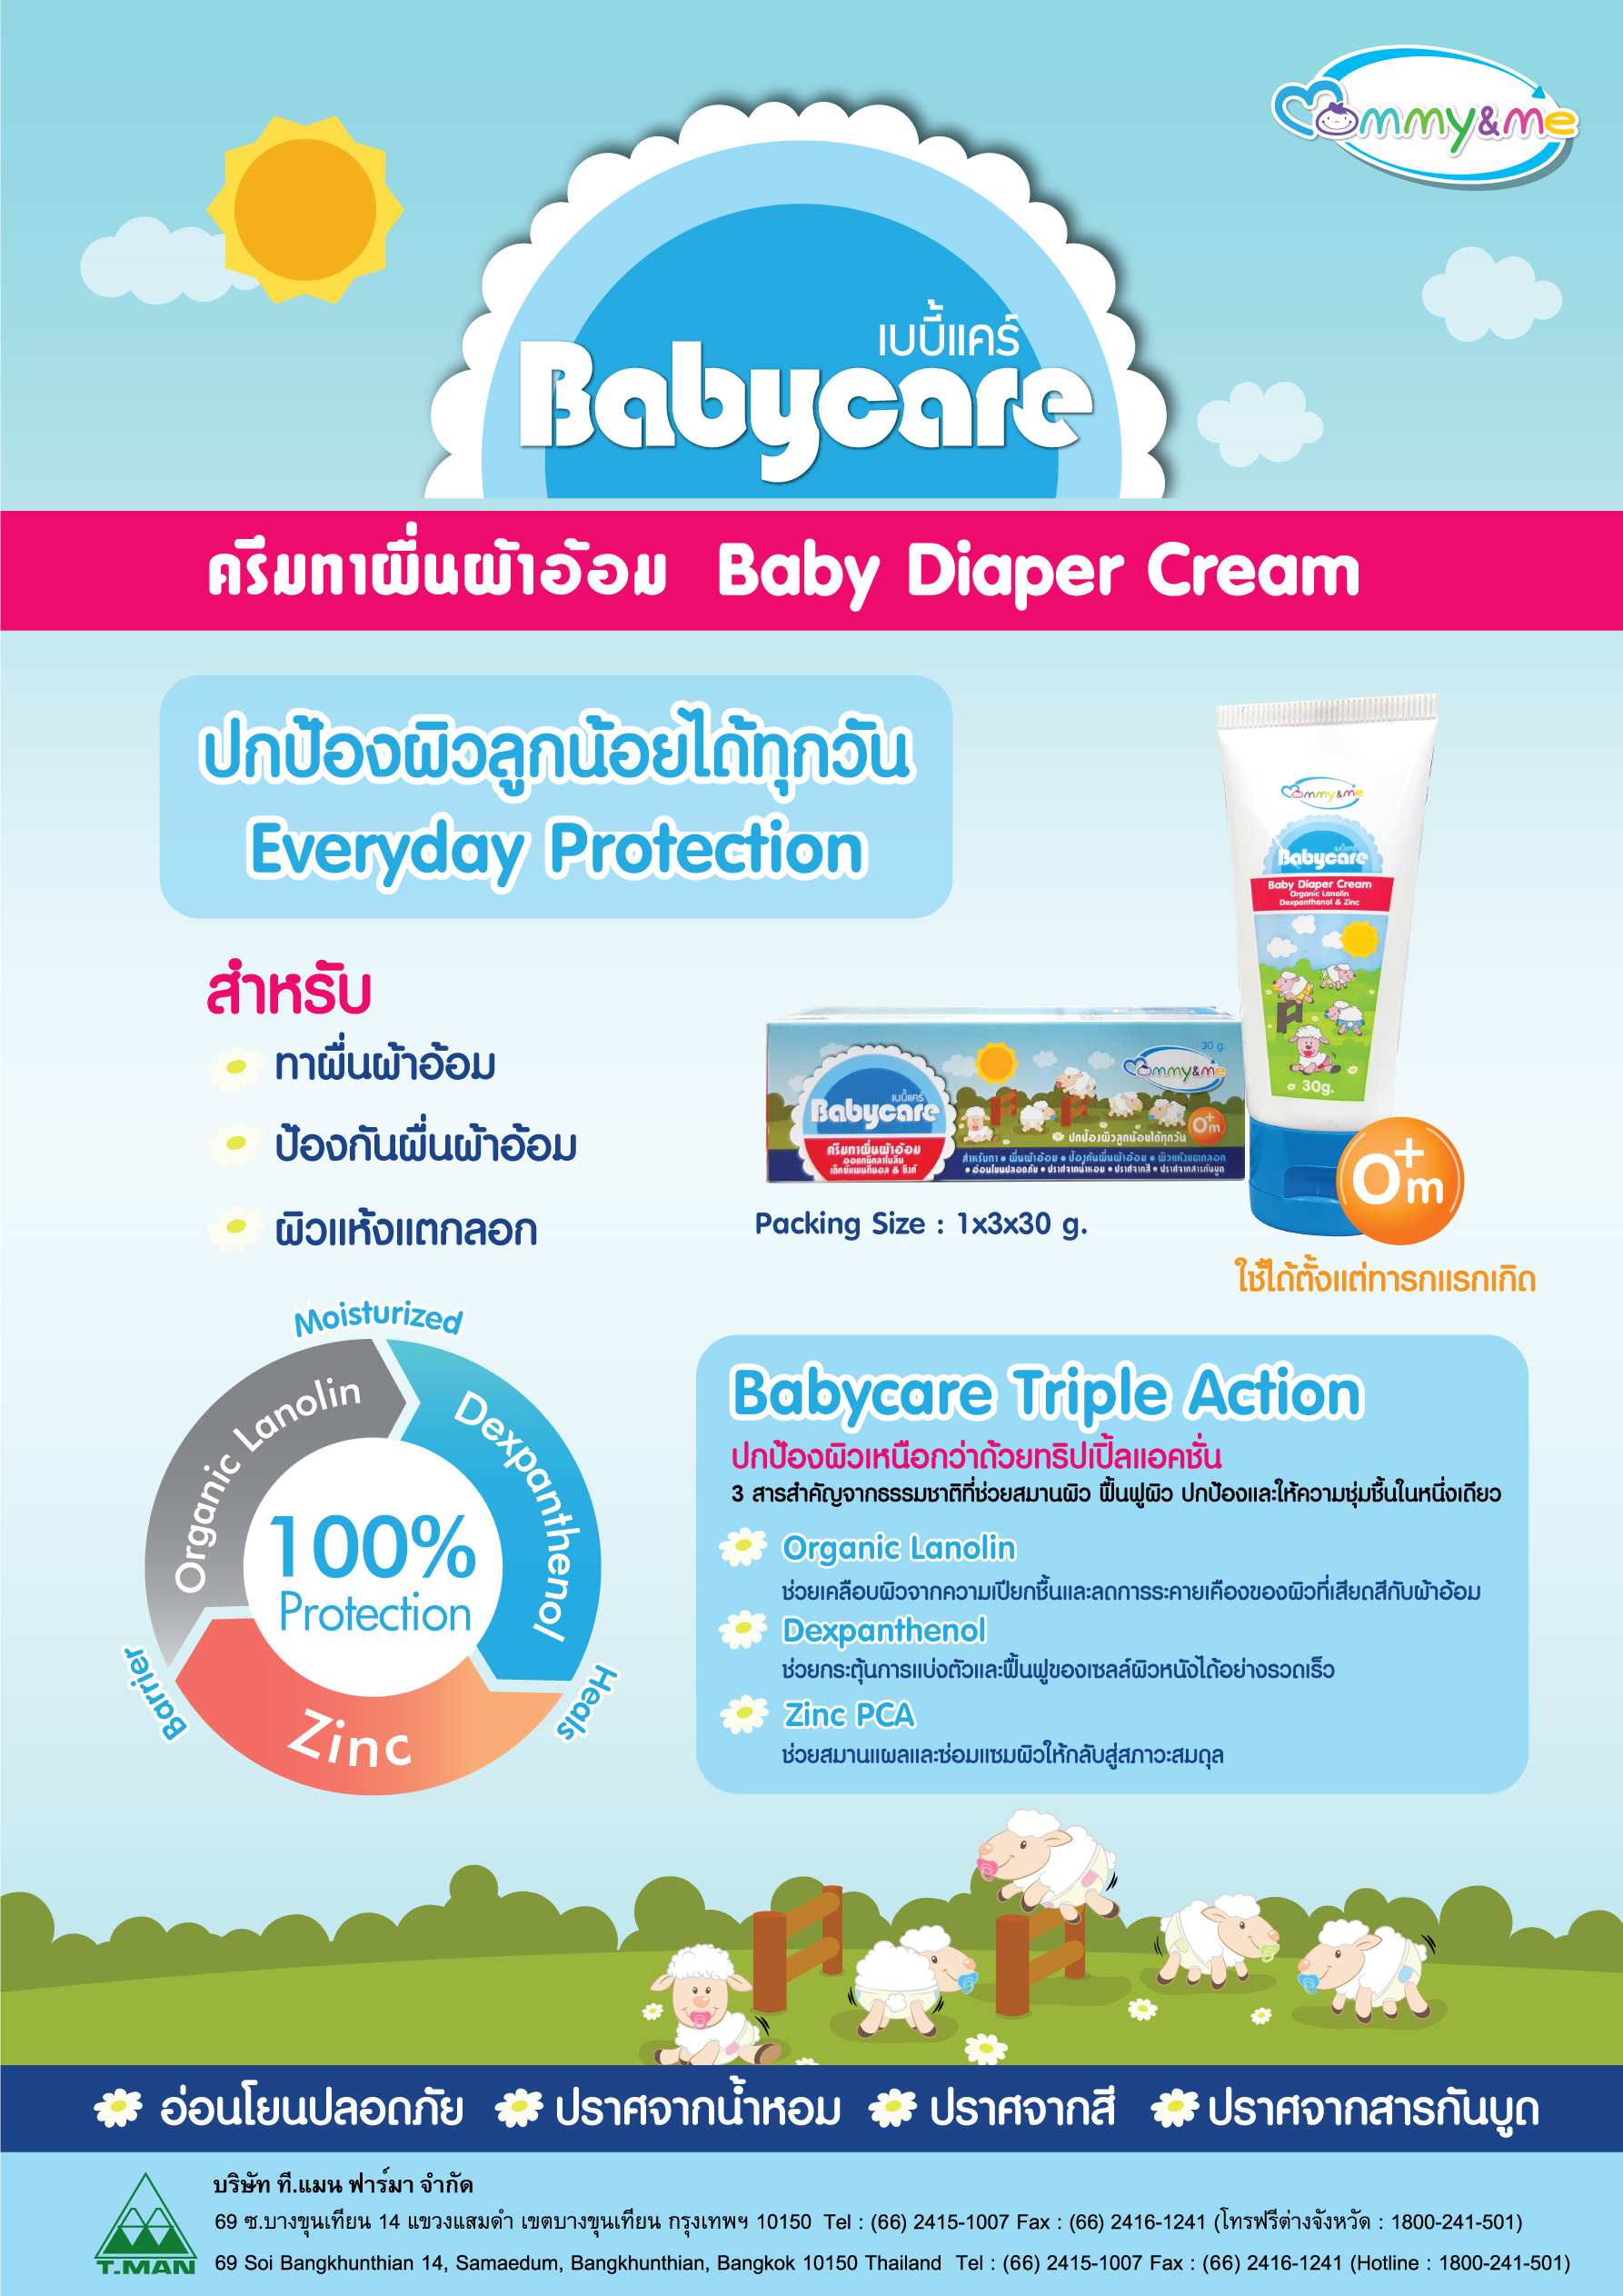 Mommy&Me, Babycare Baby Diaper Cream, ครีมทาผื่นผ้าอ้อม, ครีมทาผิวแห้งแตกลอก,ครีมเด็กทารก